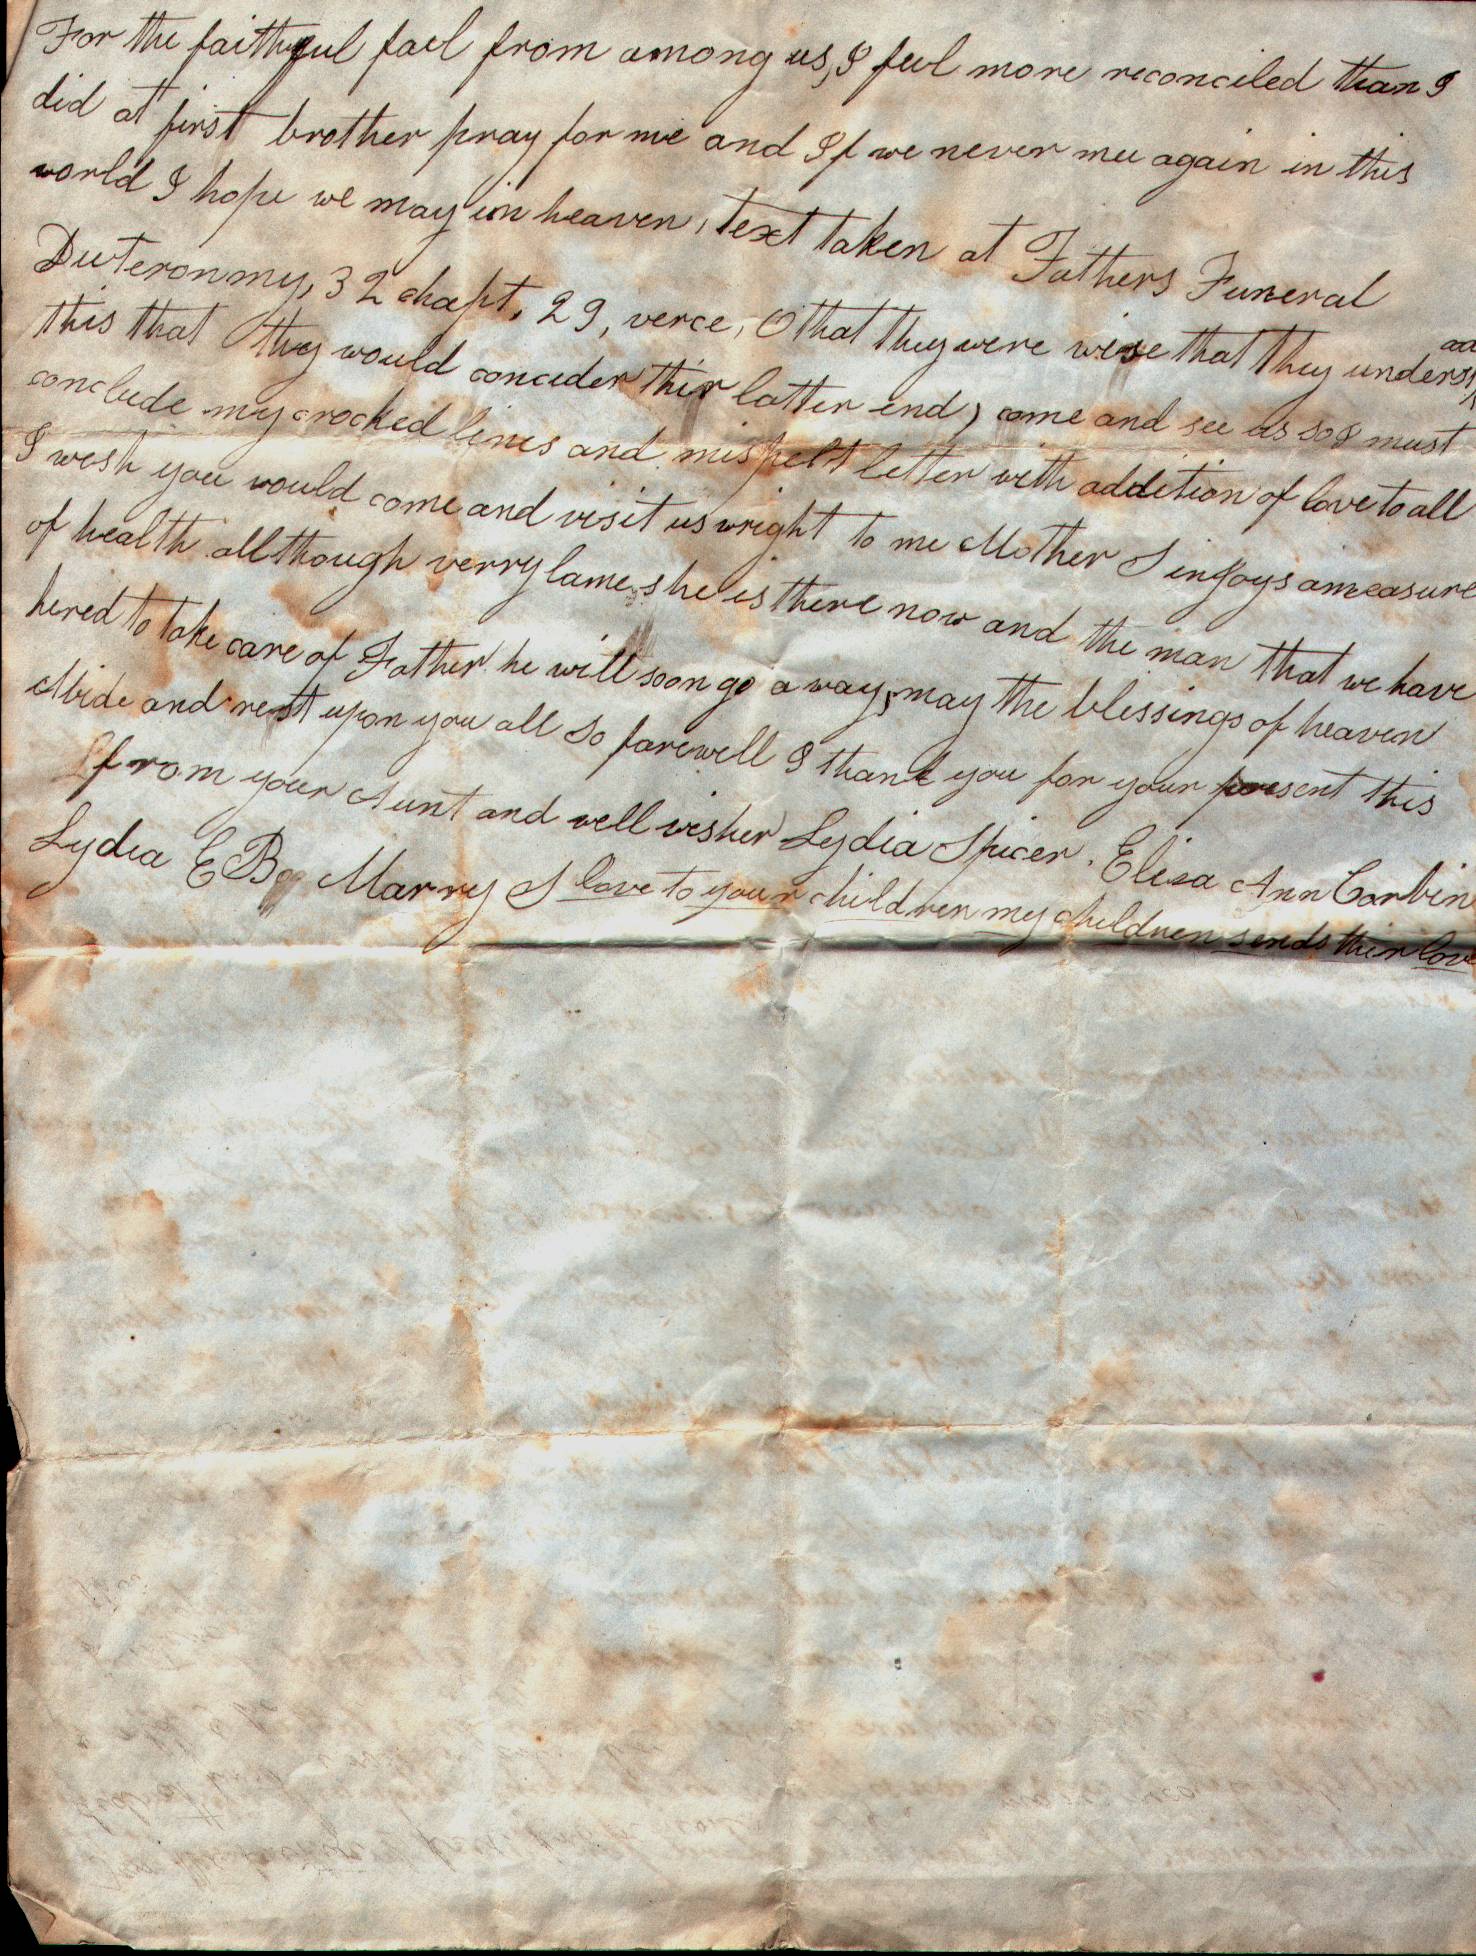 1851 Letter from Lydia (Stanton) Spicer - PG 4